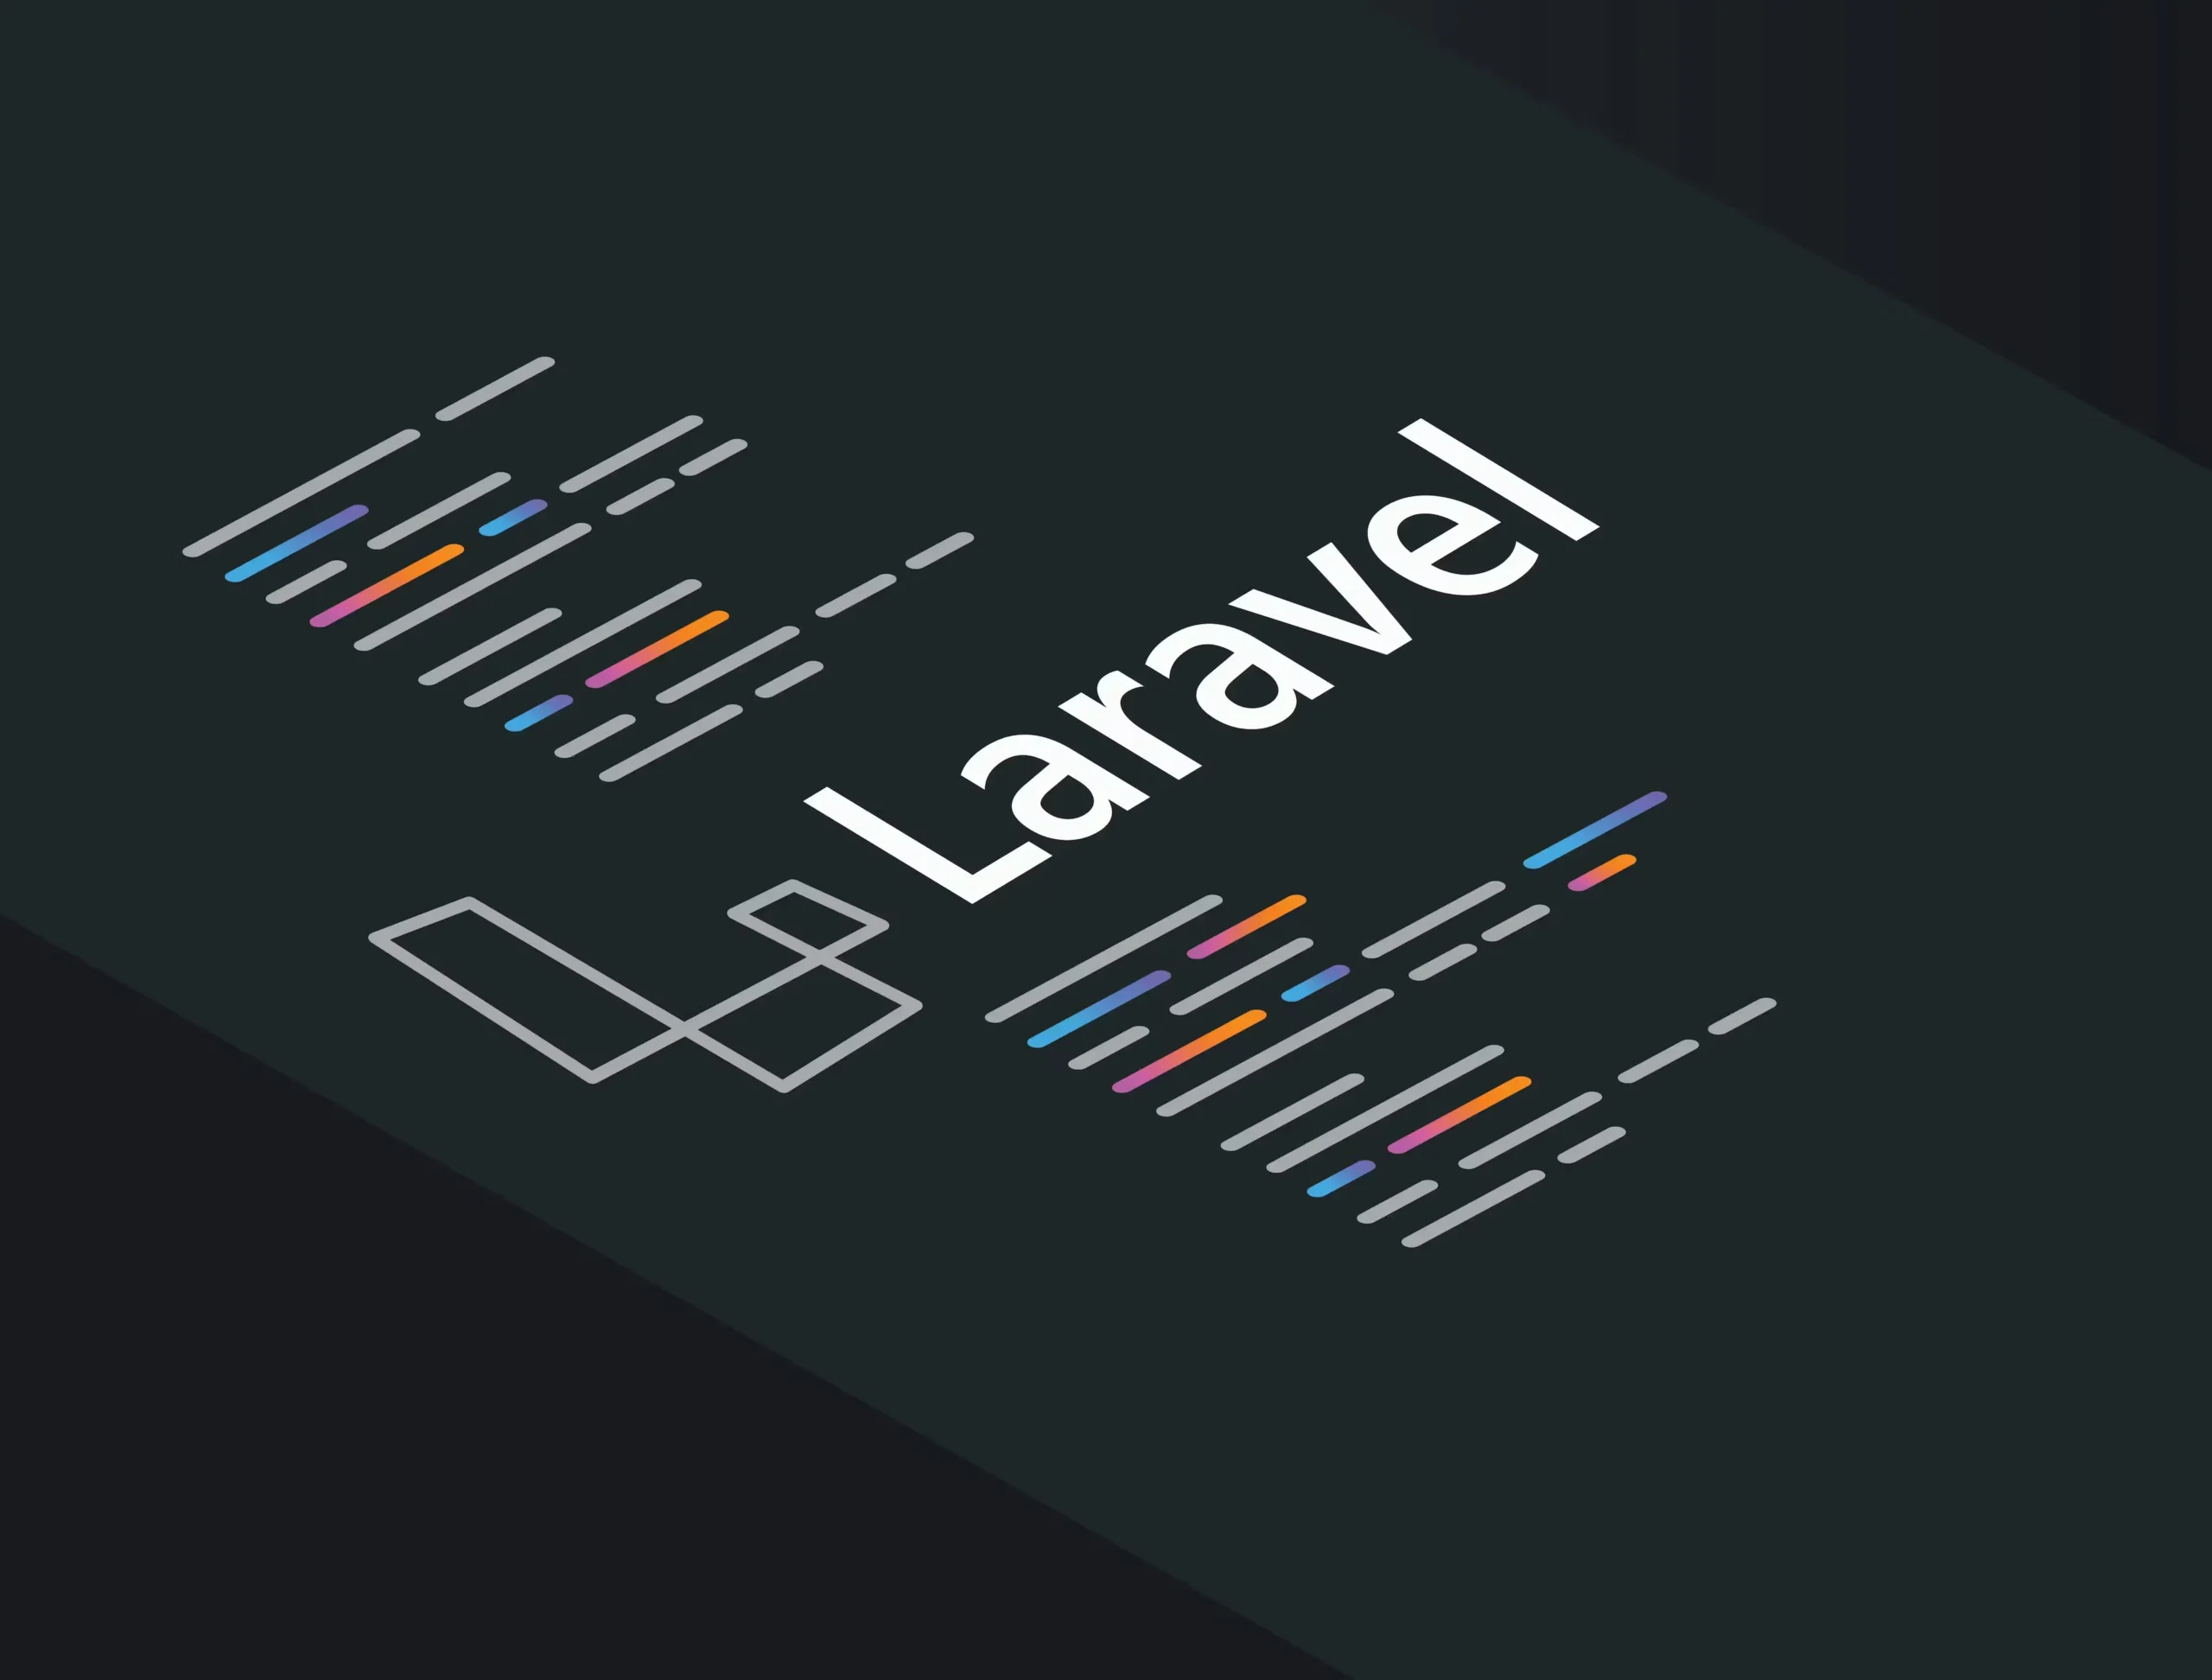 hiring Laravel developers